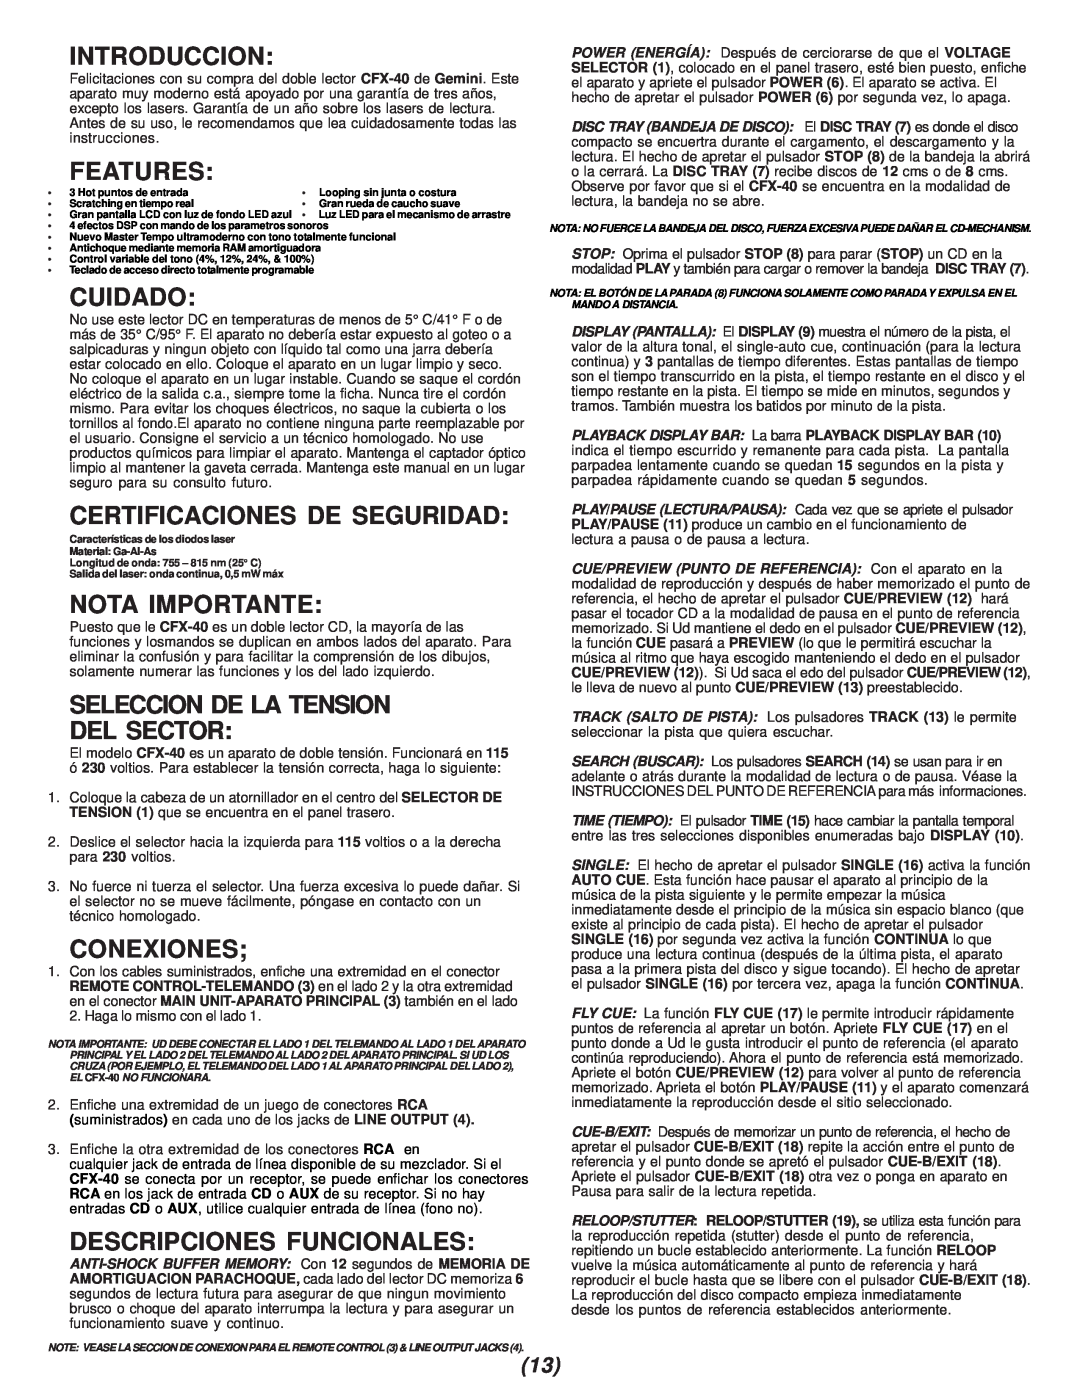 Gemini CFX-40 Introduccion, Cuidado, Certificaciones De Seguridad, Nota Importante, Seleccion De La Tension Del Sector 